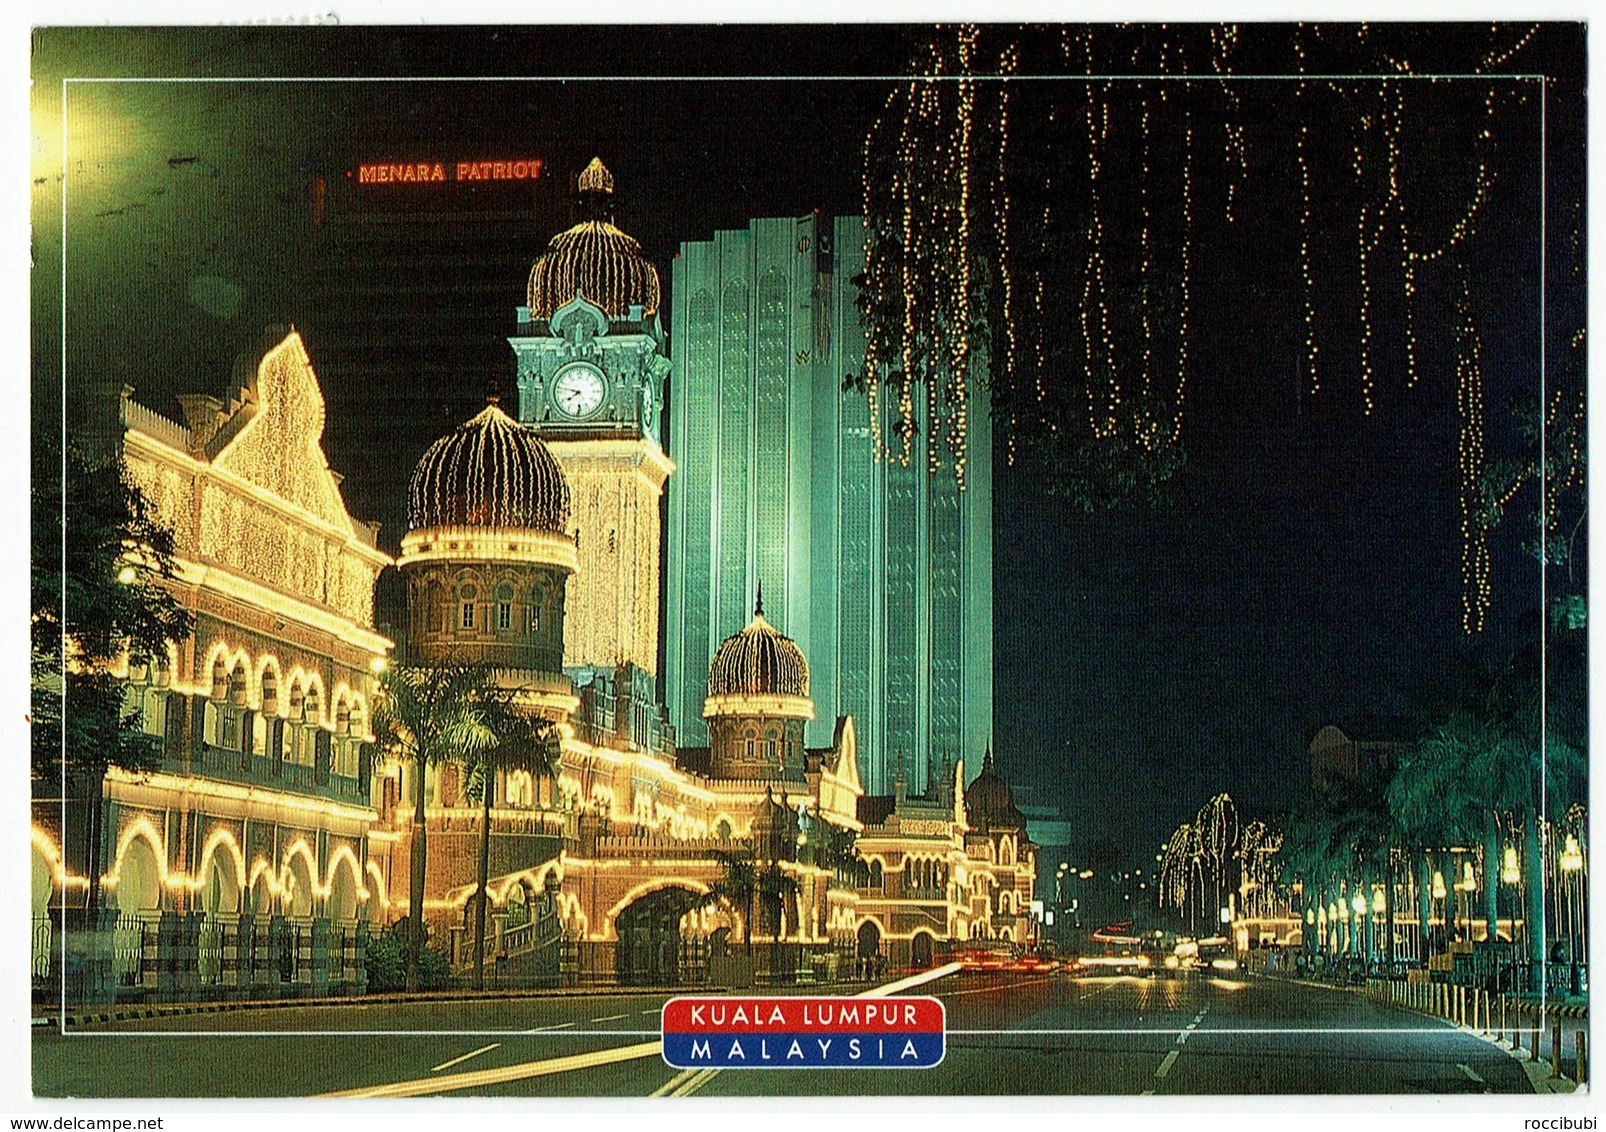 Malaysia, Kuala Lumpur - Malaysia